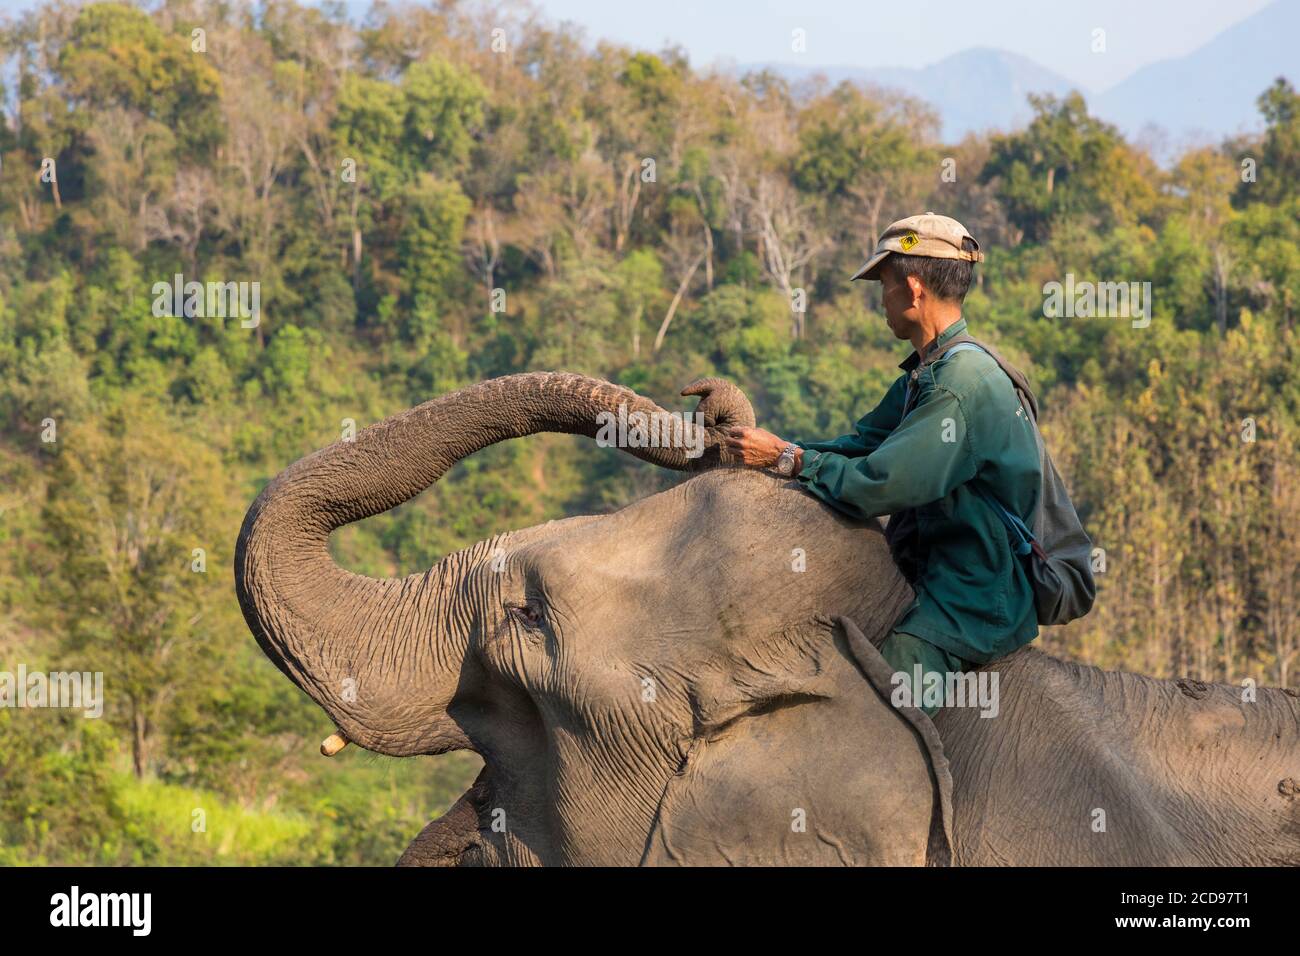 Laos, Sayaboury provincia, Centro de Conservación del Elefante, mahout alimentar a su elefante Foto de stock